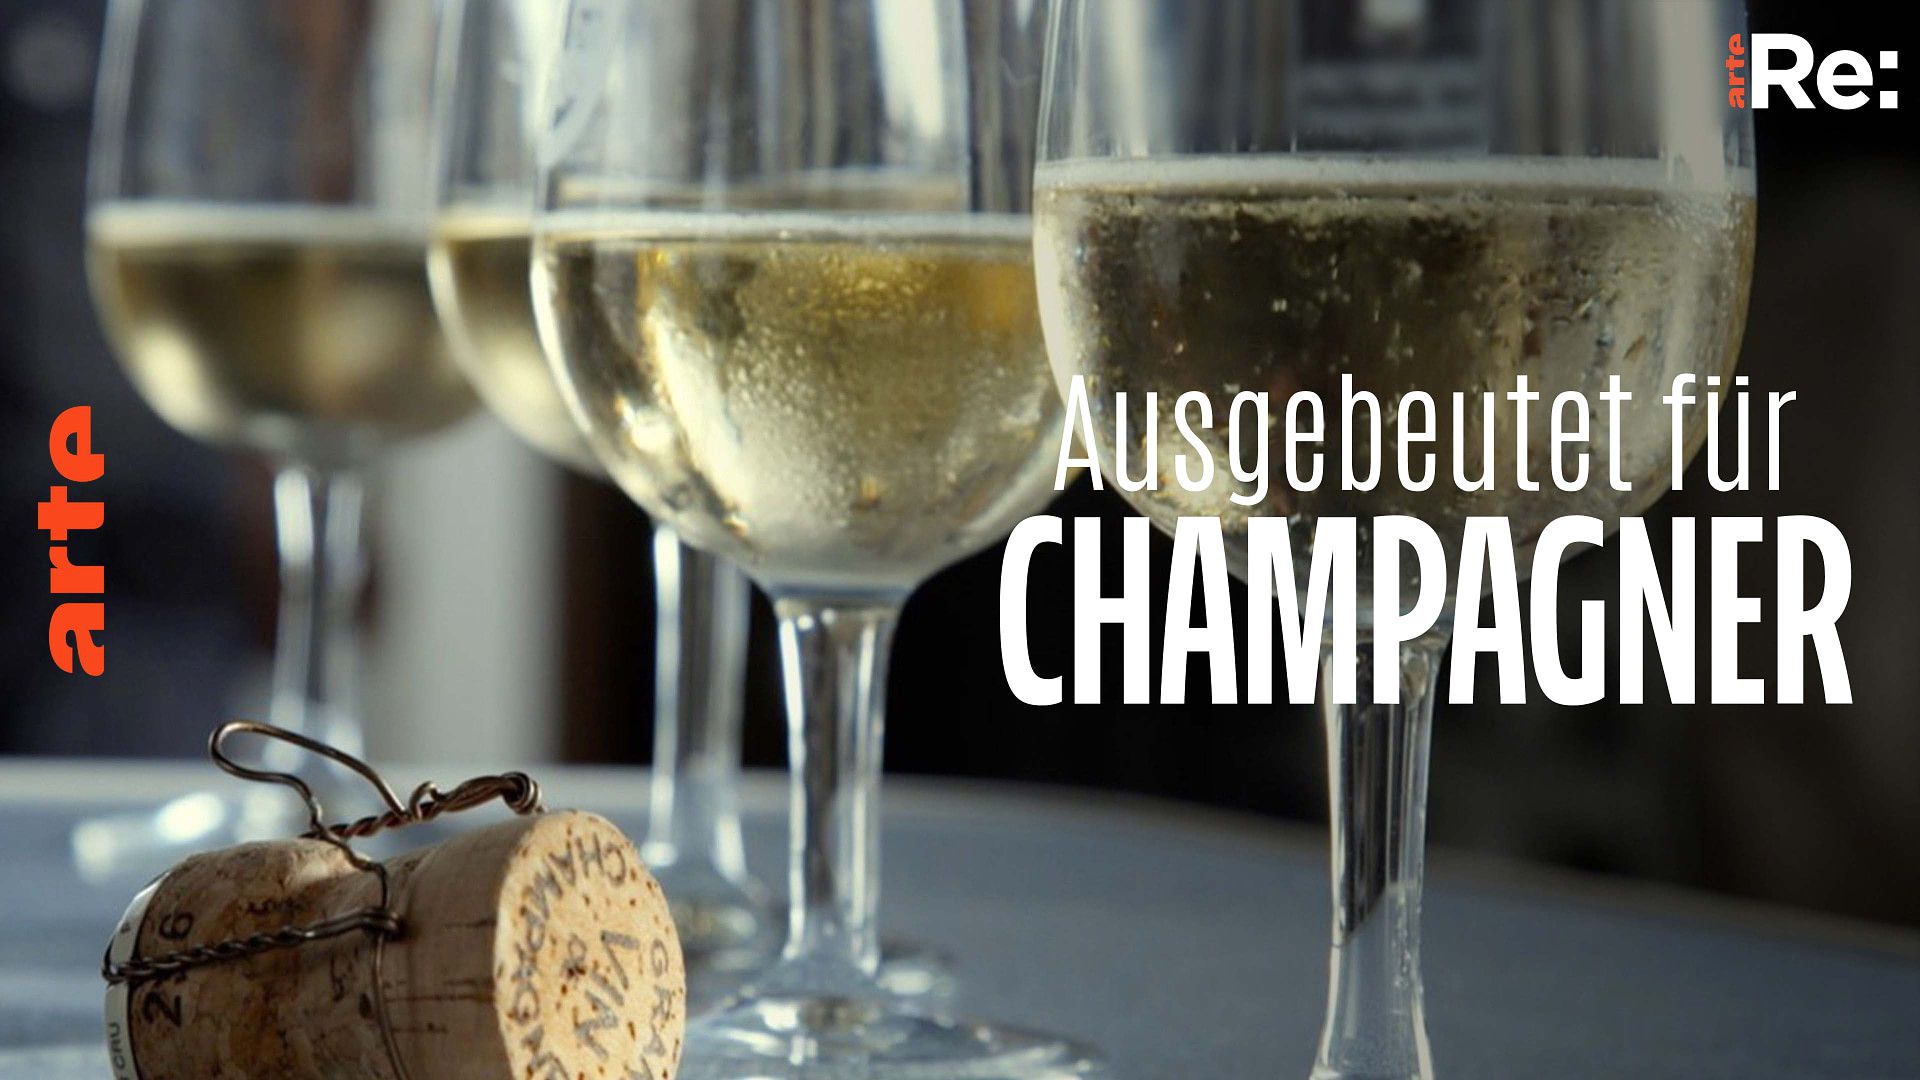 Re: Ausgebeutet für Champagner - Die ganze Doku | ARTE